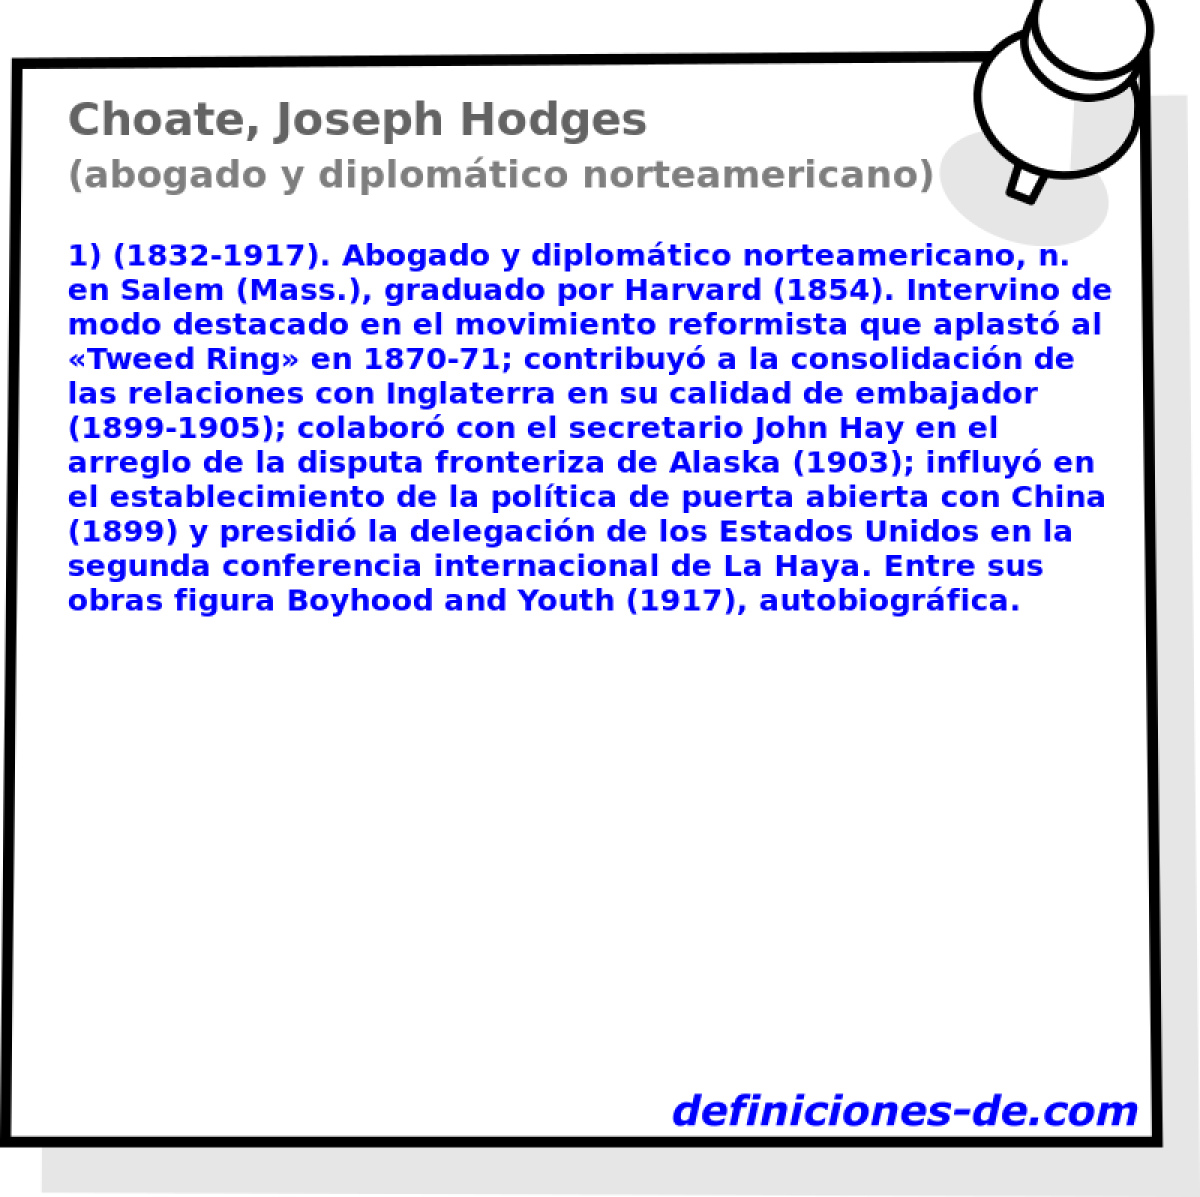 Choate, Joseph Hodges (abogado y diplomtico norteamericano)